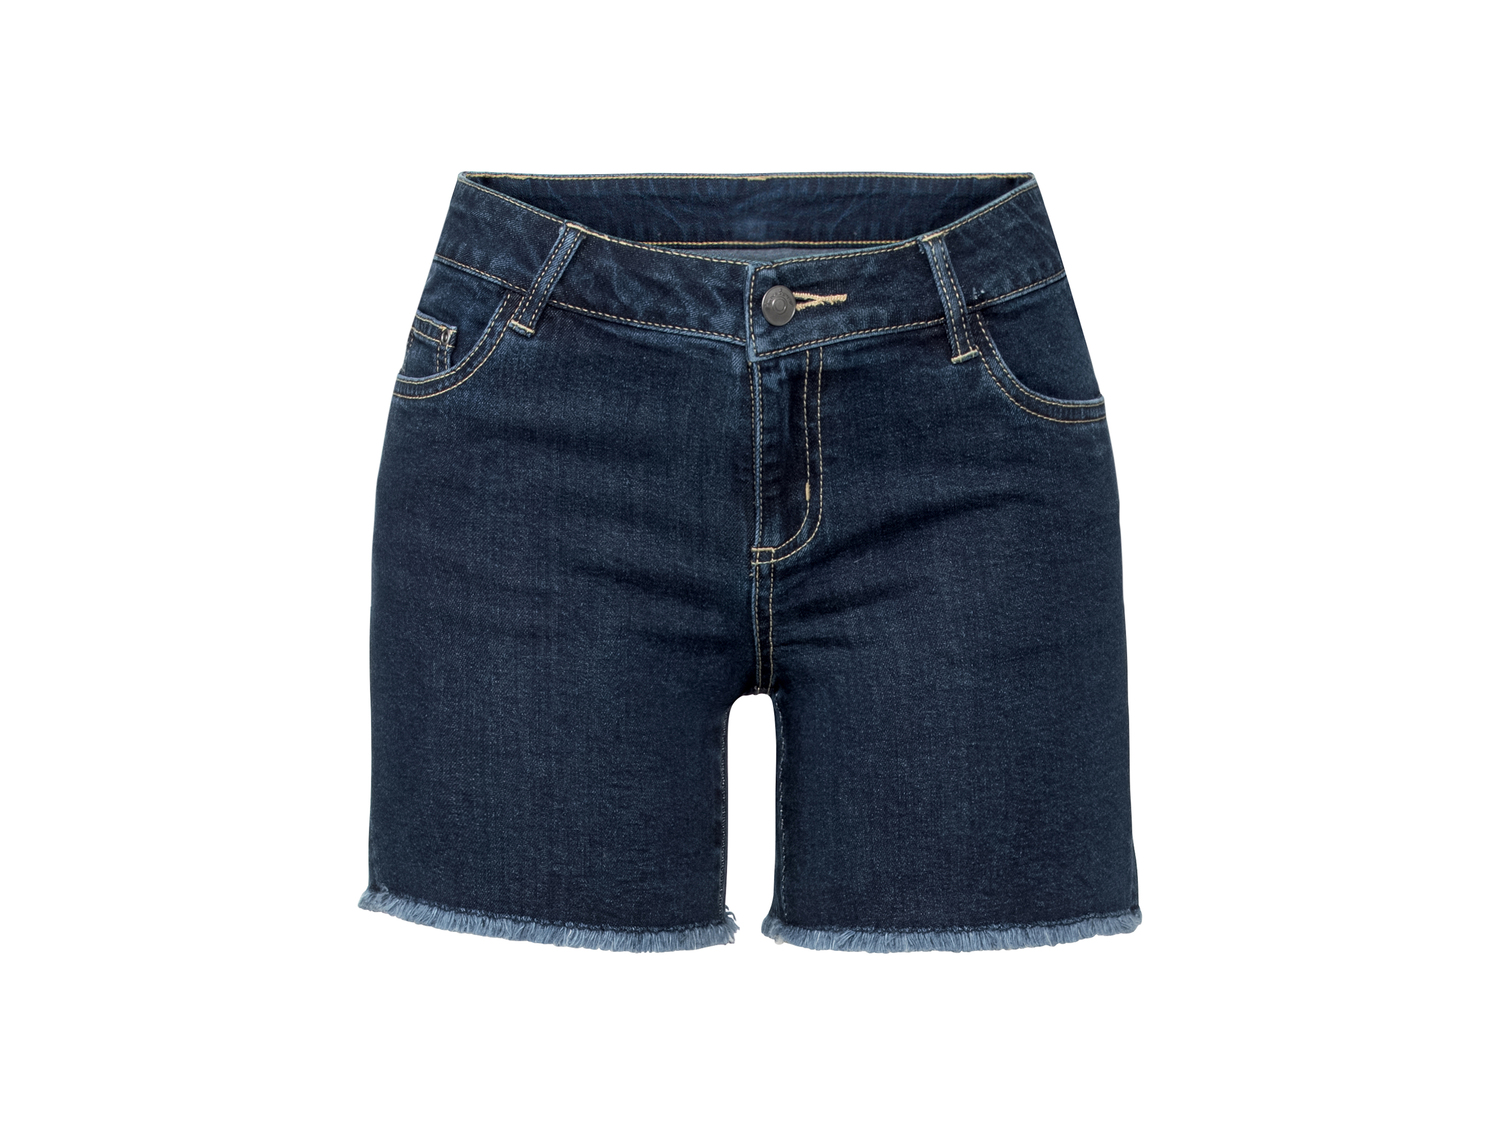 Shorts in jeans da donna Esmara, prezzo 7.99 &#8364; 
Misure: 38-48
Taglie disponibili

Caratteristiche

- ...